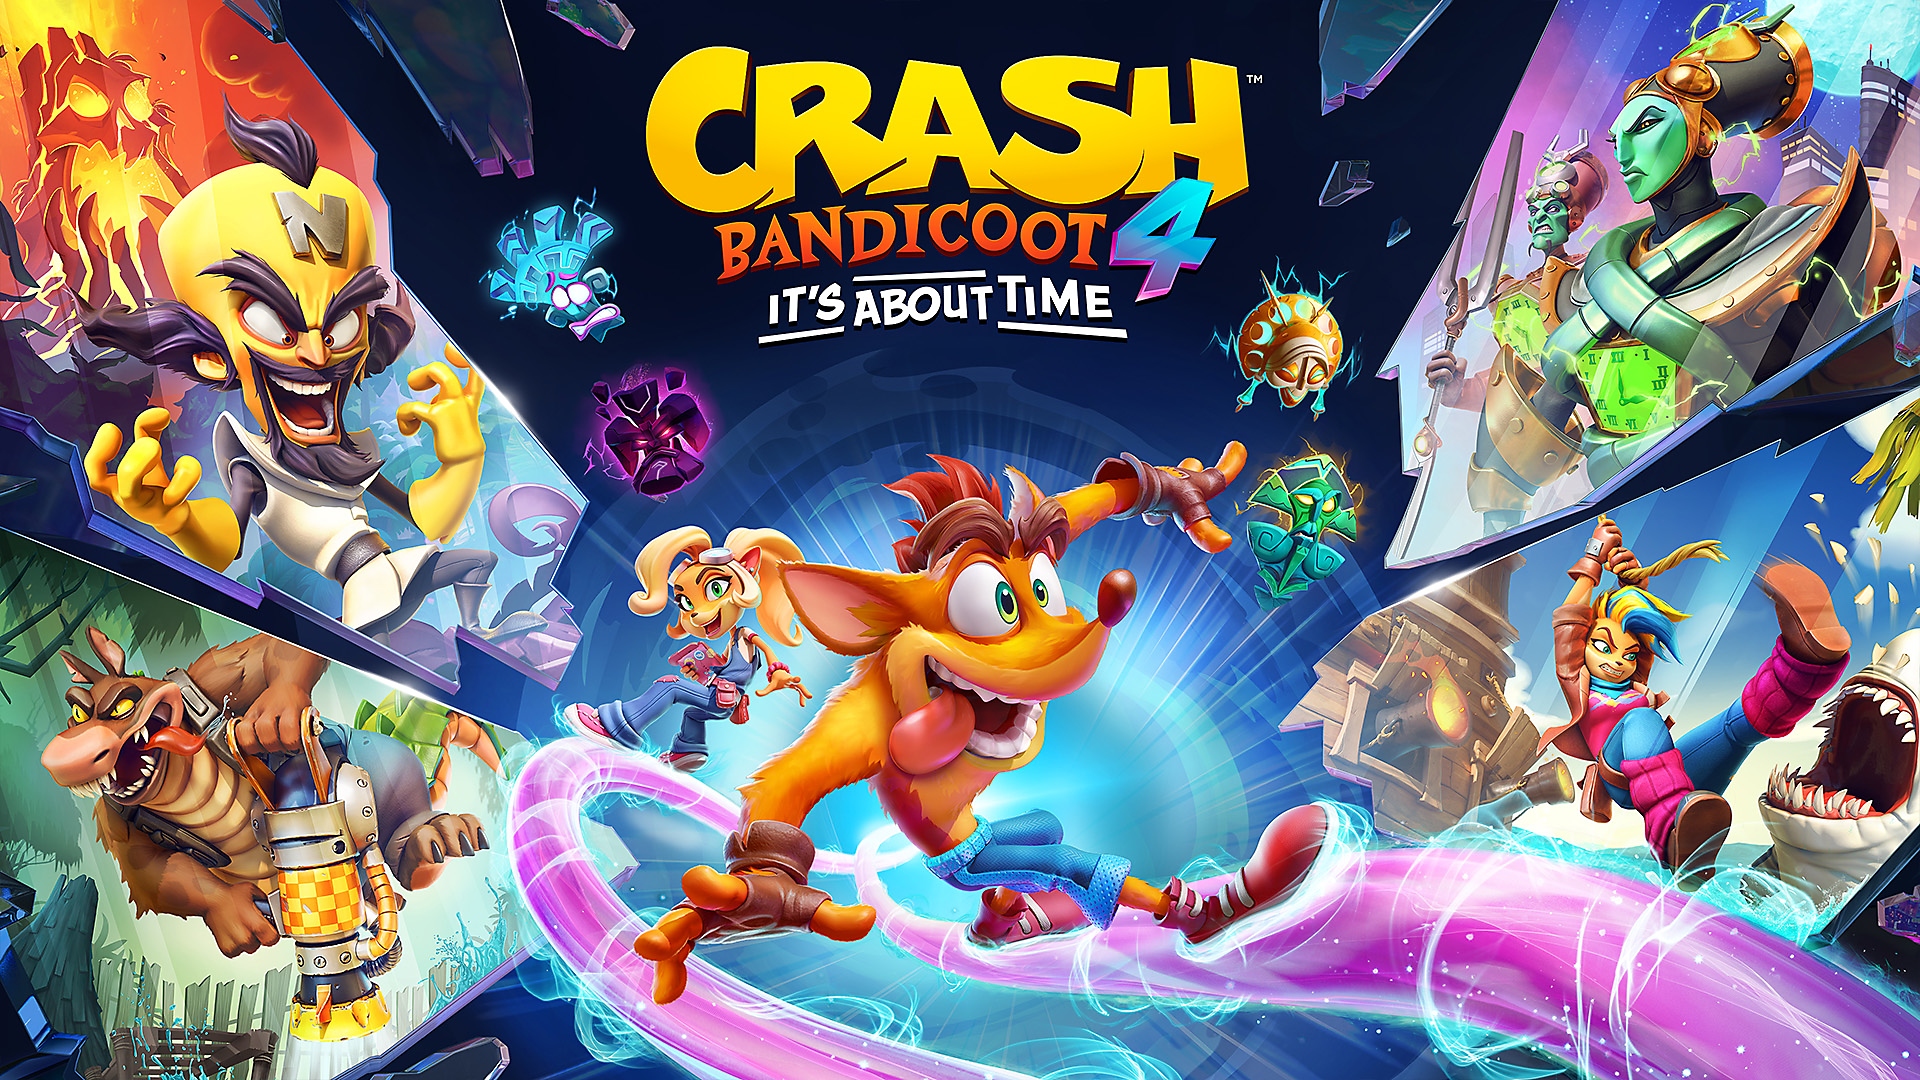 Crash Bandicoot 4 – julkaisutraileri